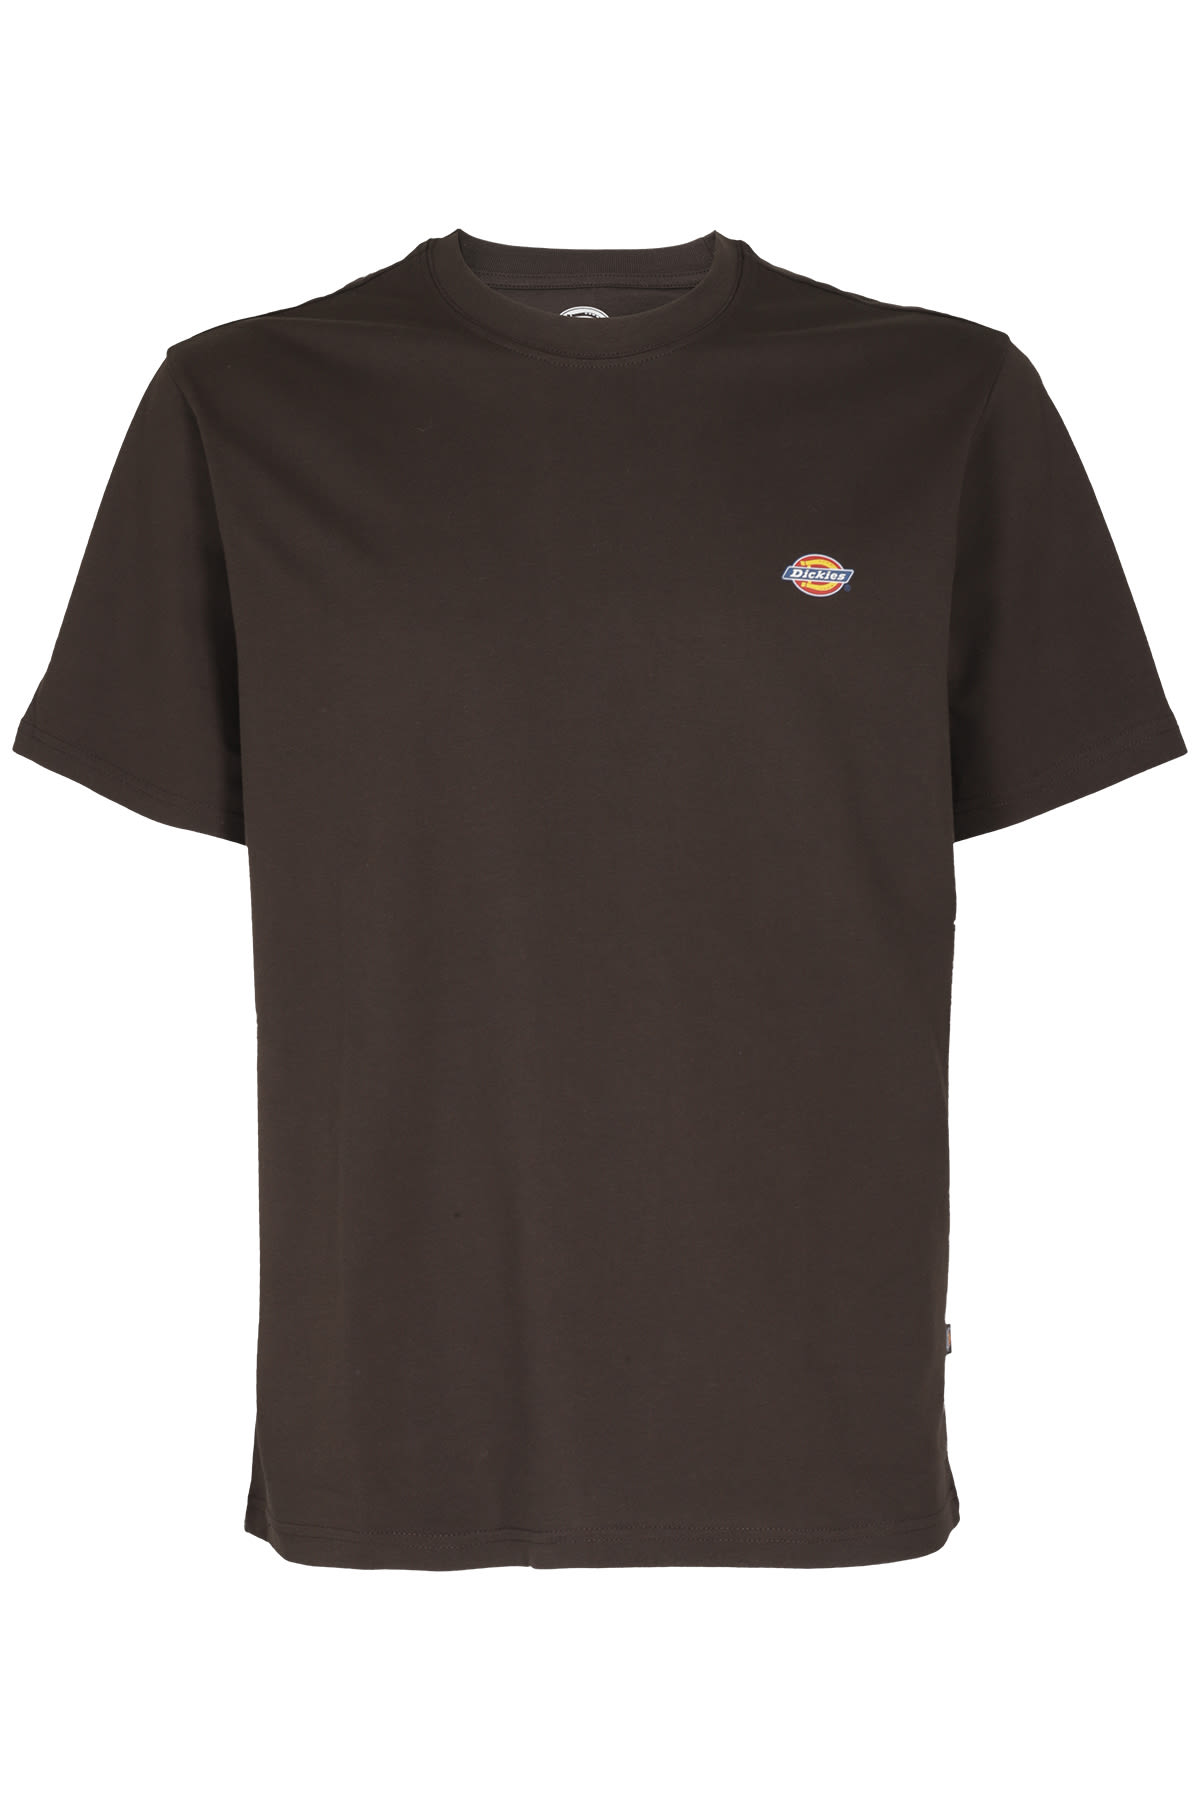 Dickies Ss Mapleton Tshirt - 0Brw Brown - male - Size: Medium